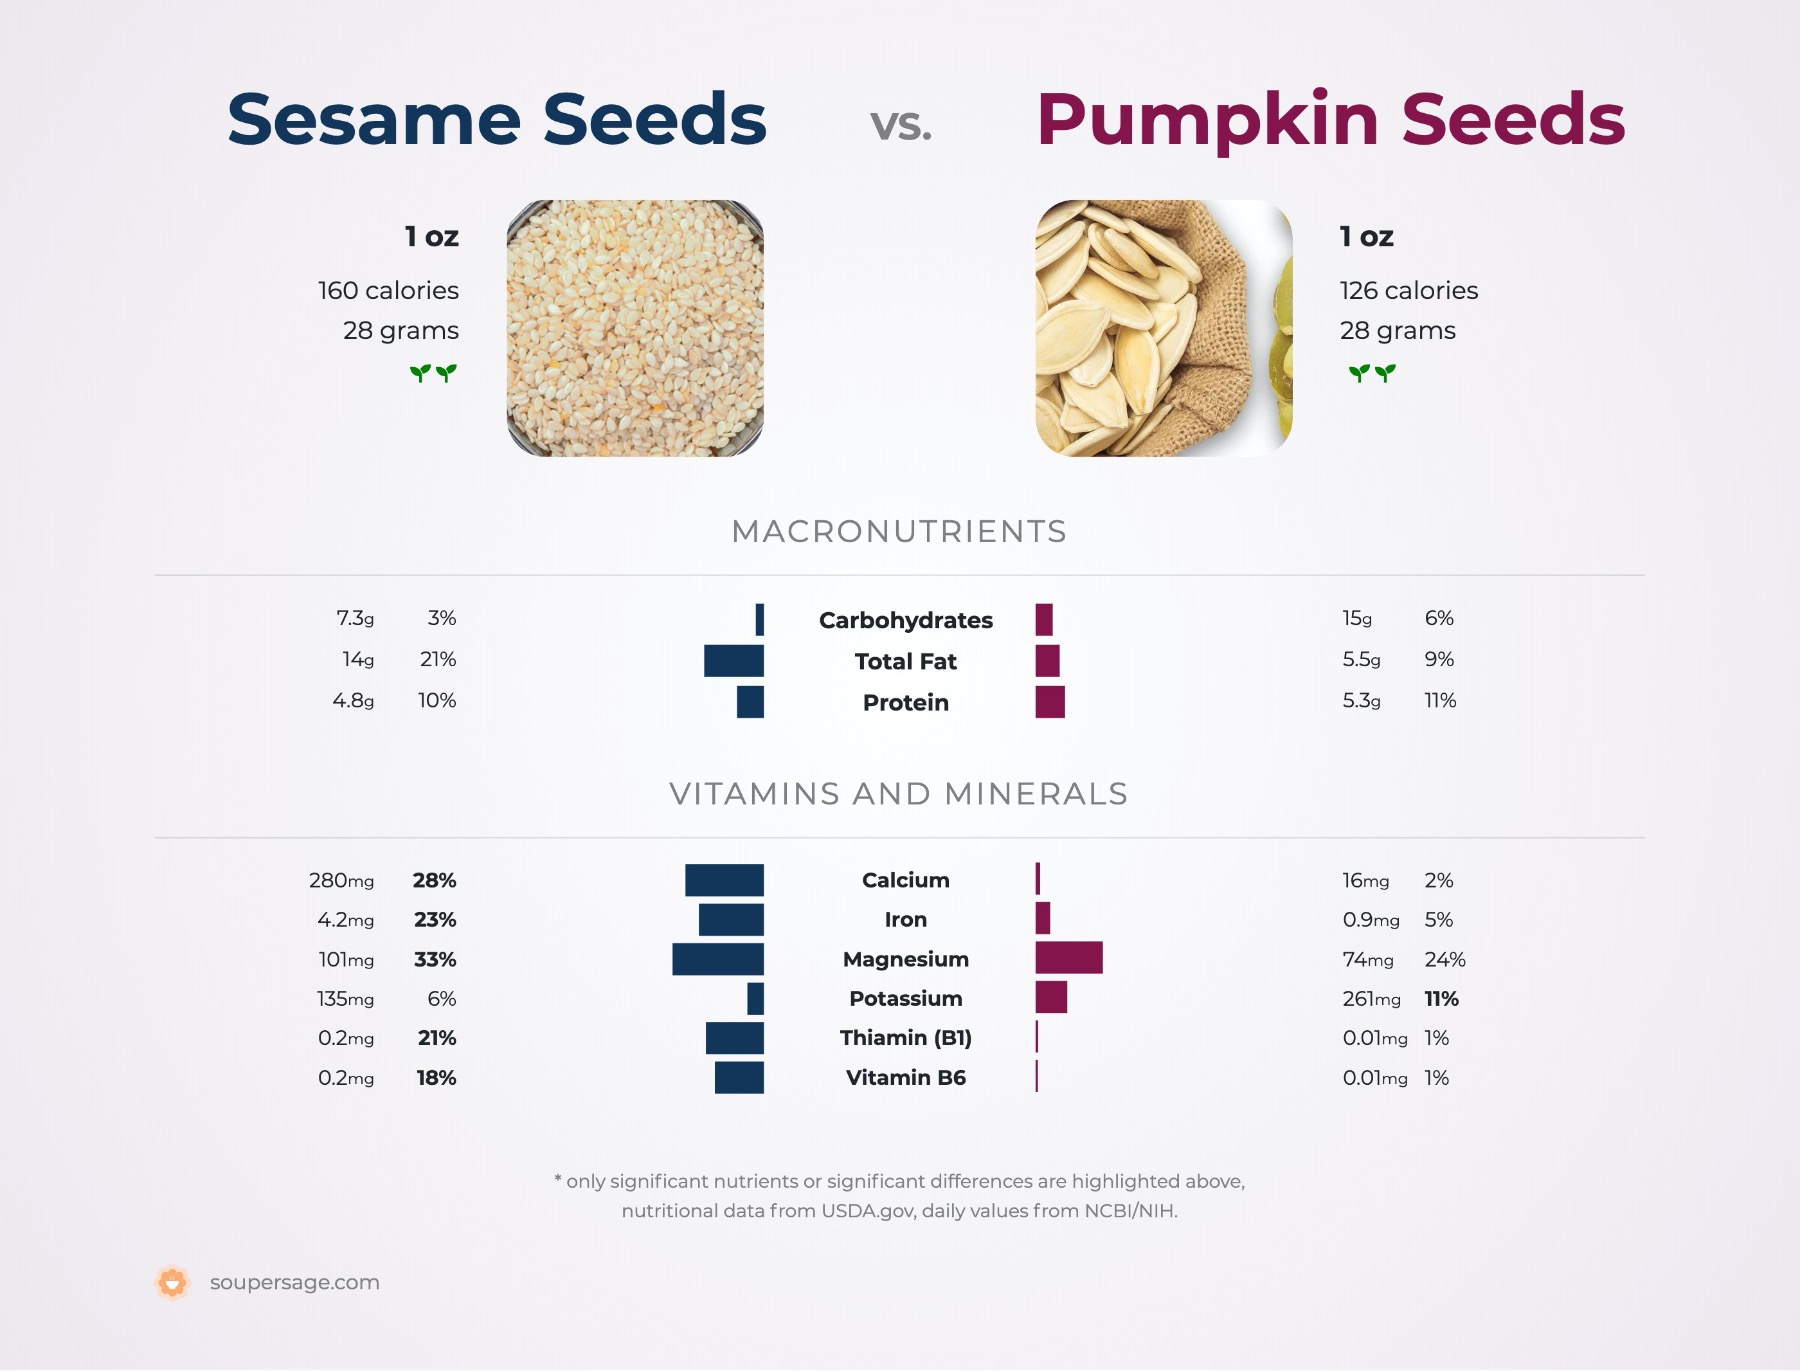 nutrition comparison of pumpkin seeds vs. sesame seeds